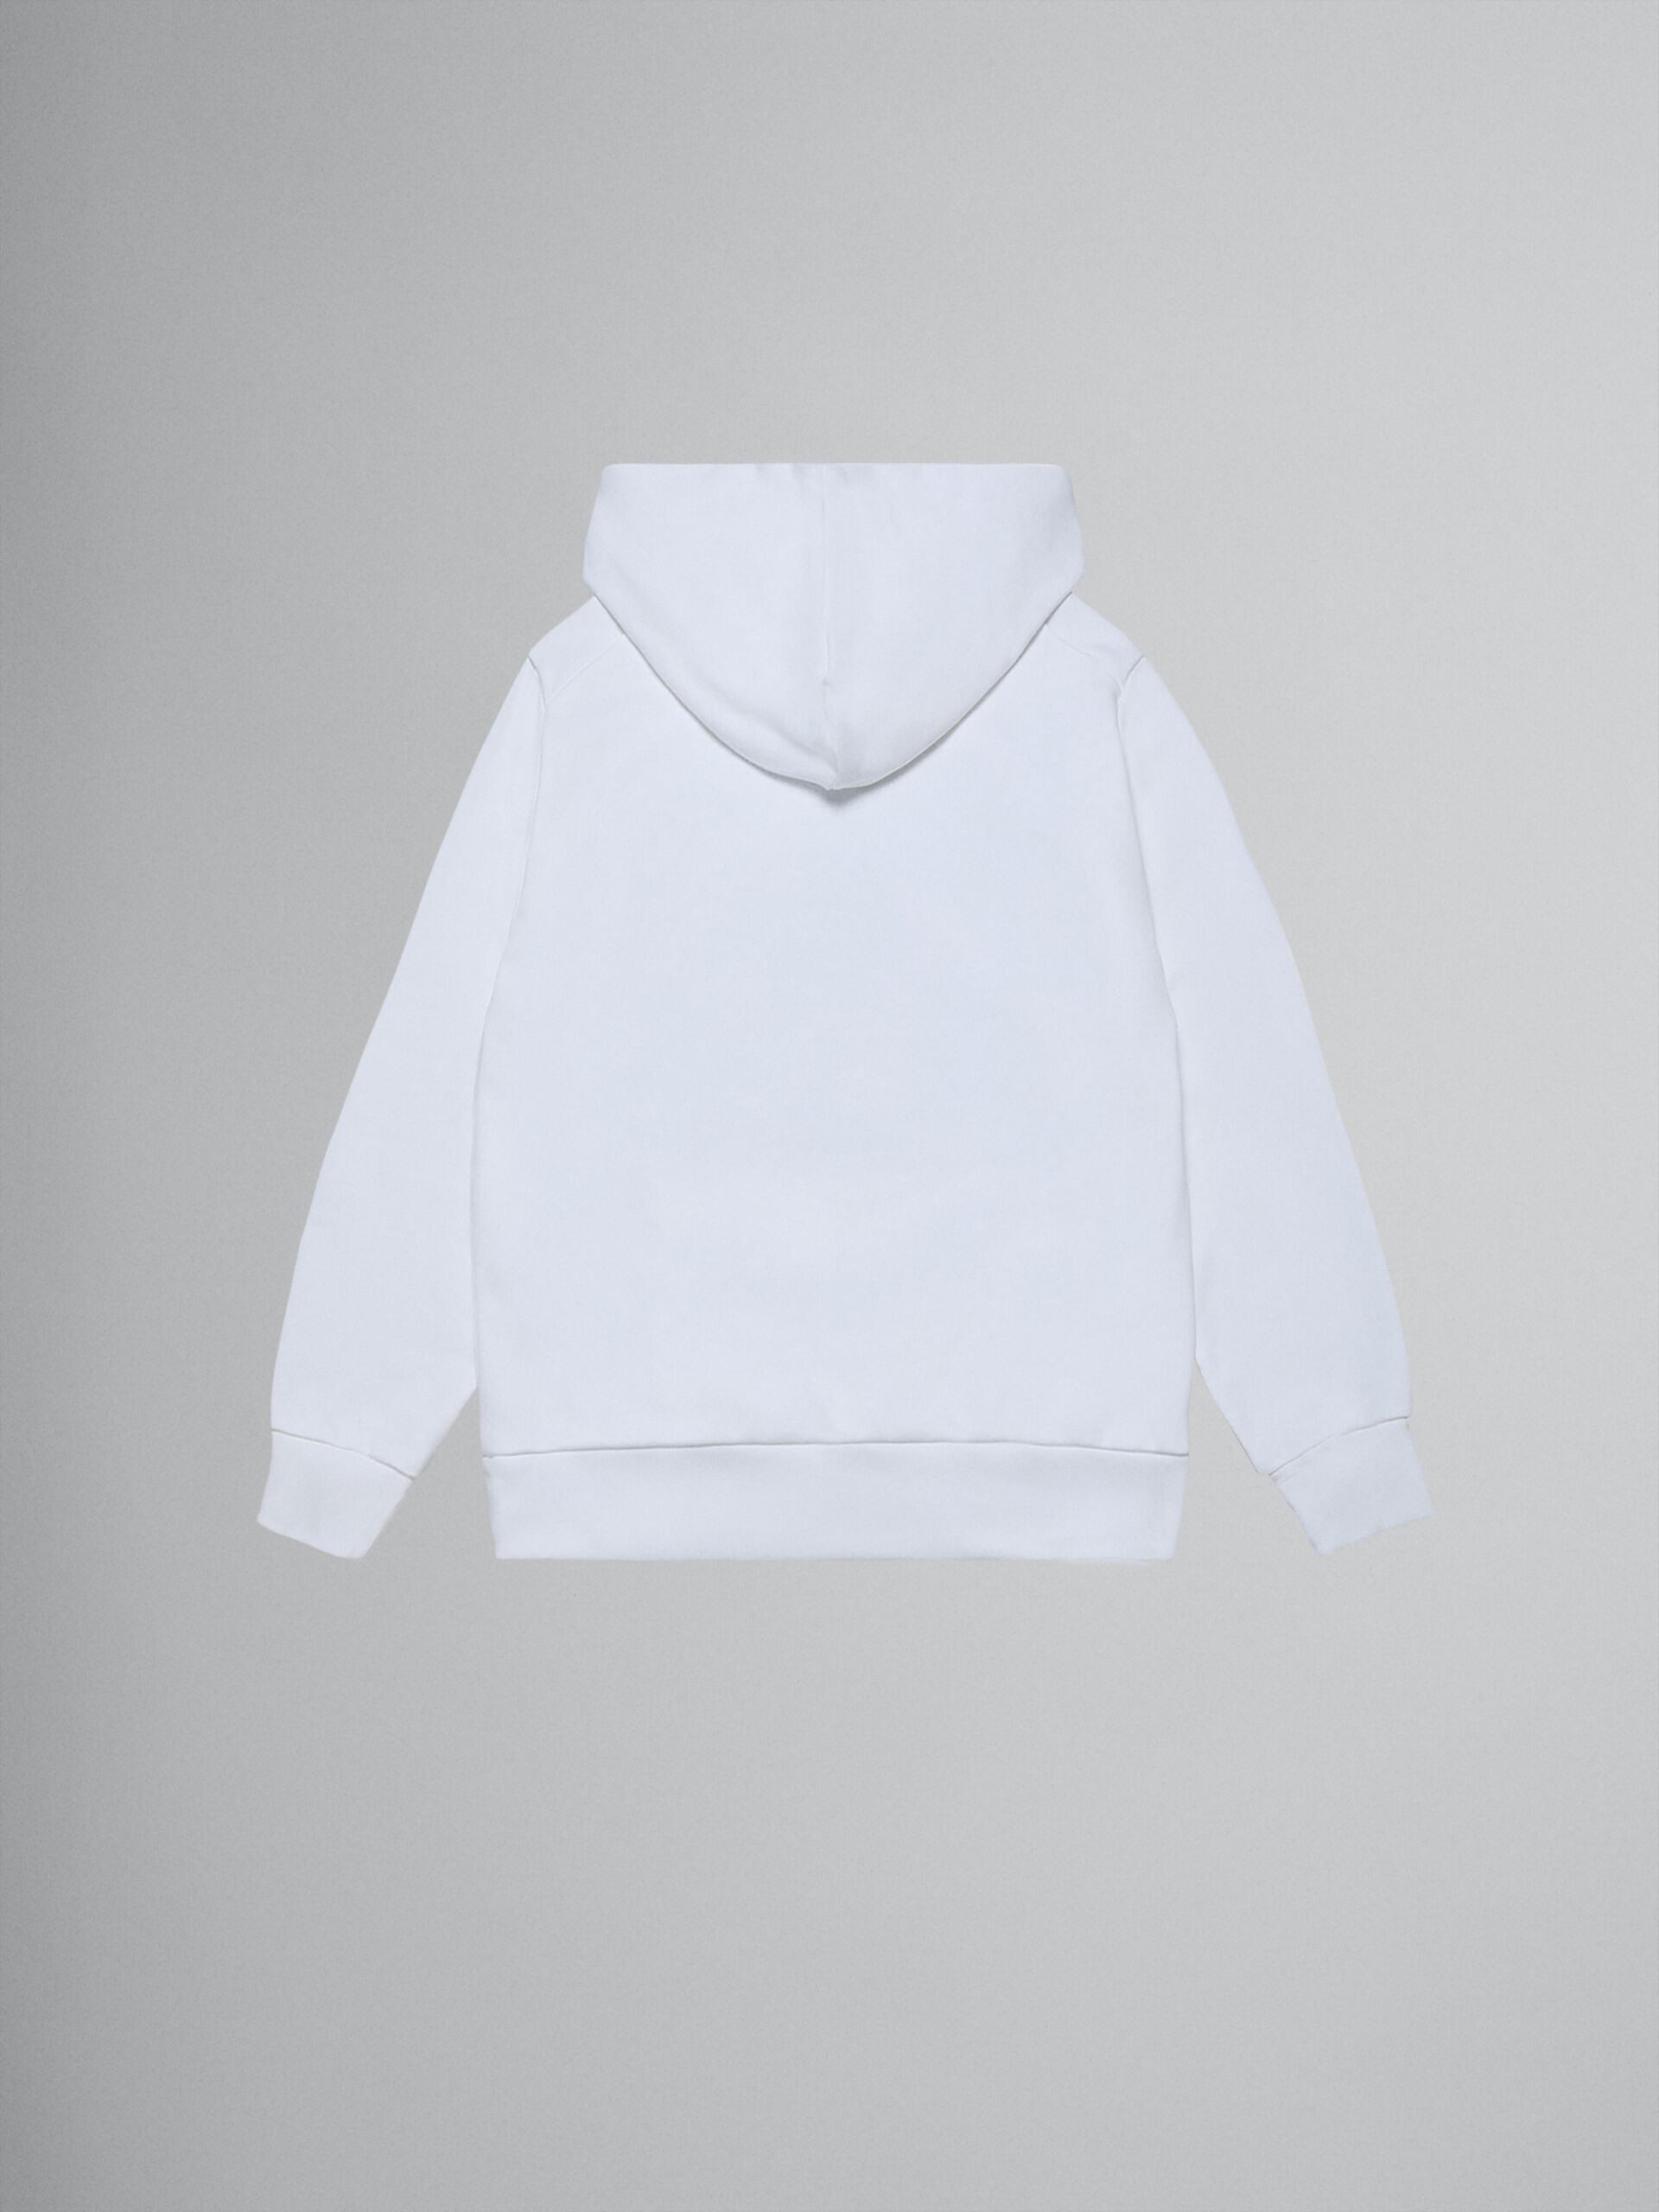 "M" 화이트 스웨트 셔츠 코튼 후드 - Sweaters - Image 2